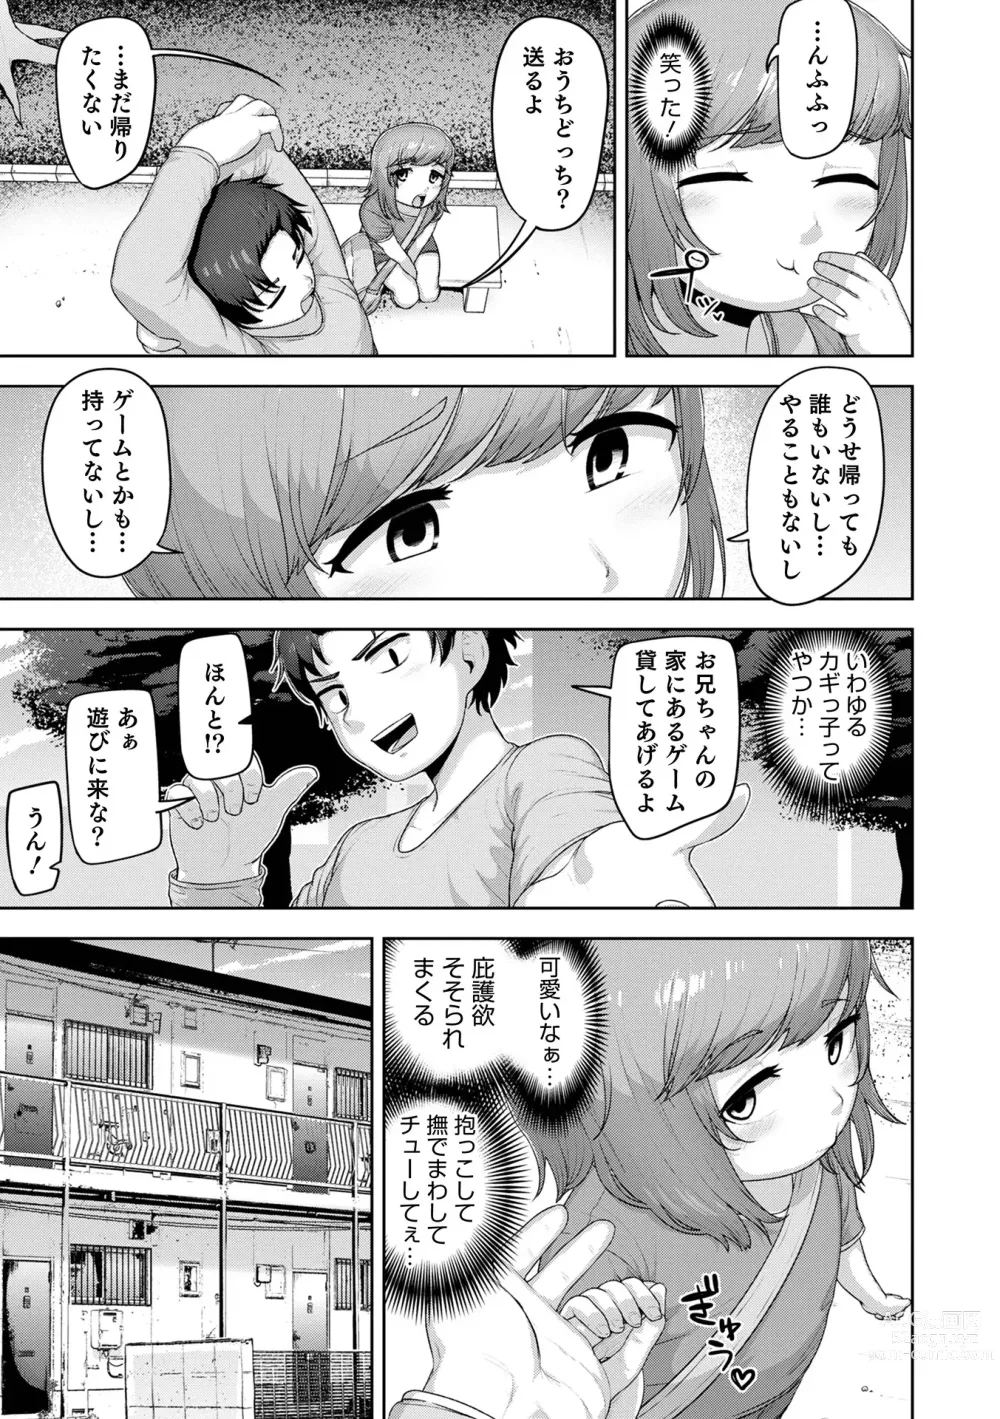 Page 9 of manga Muchiniku Otokonoko Tenshi’s